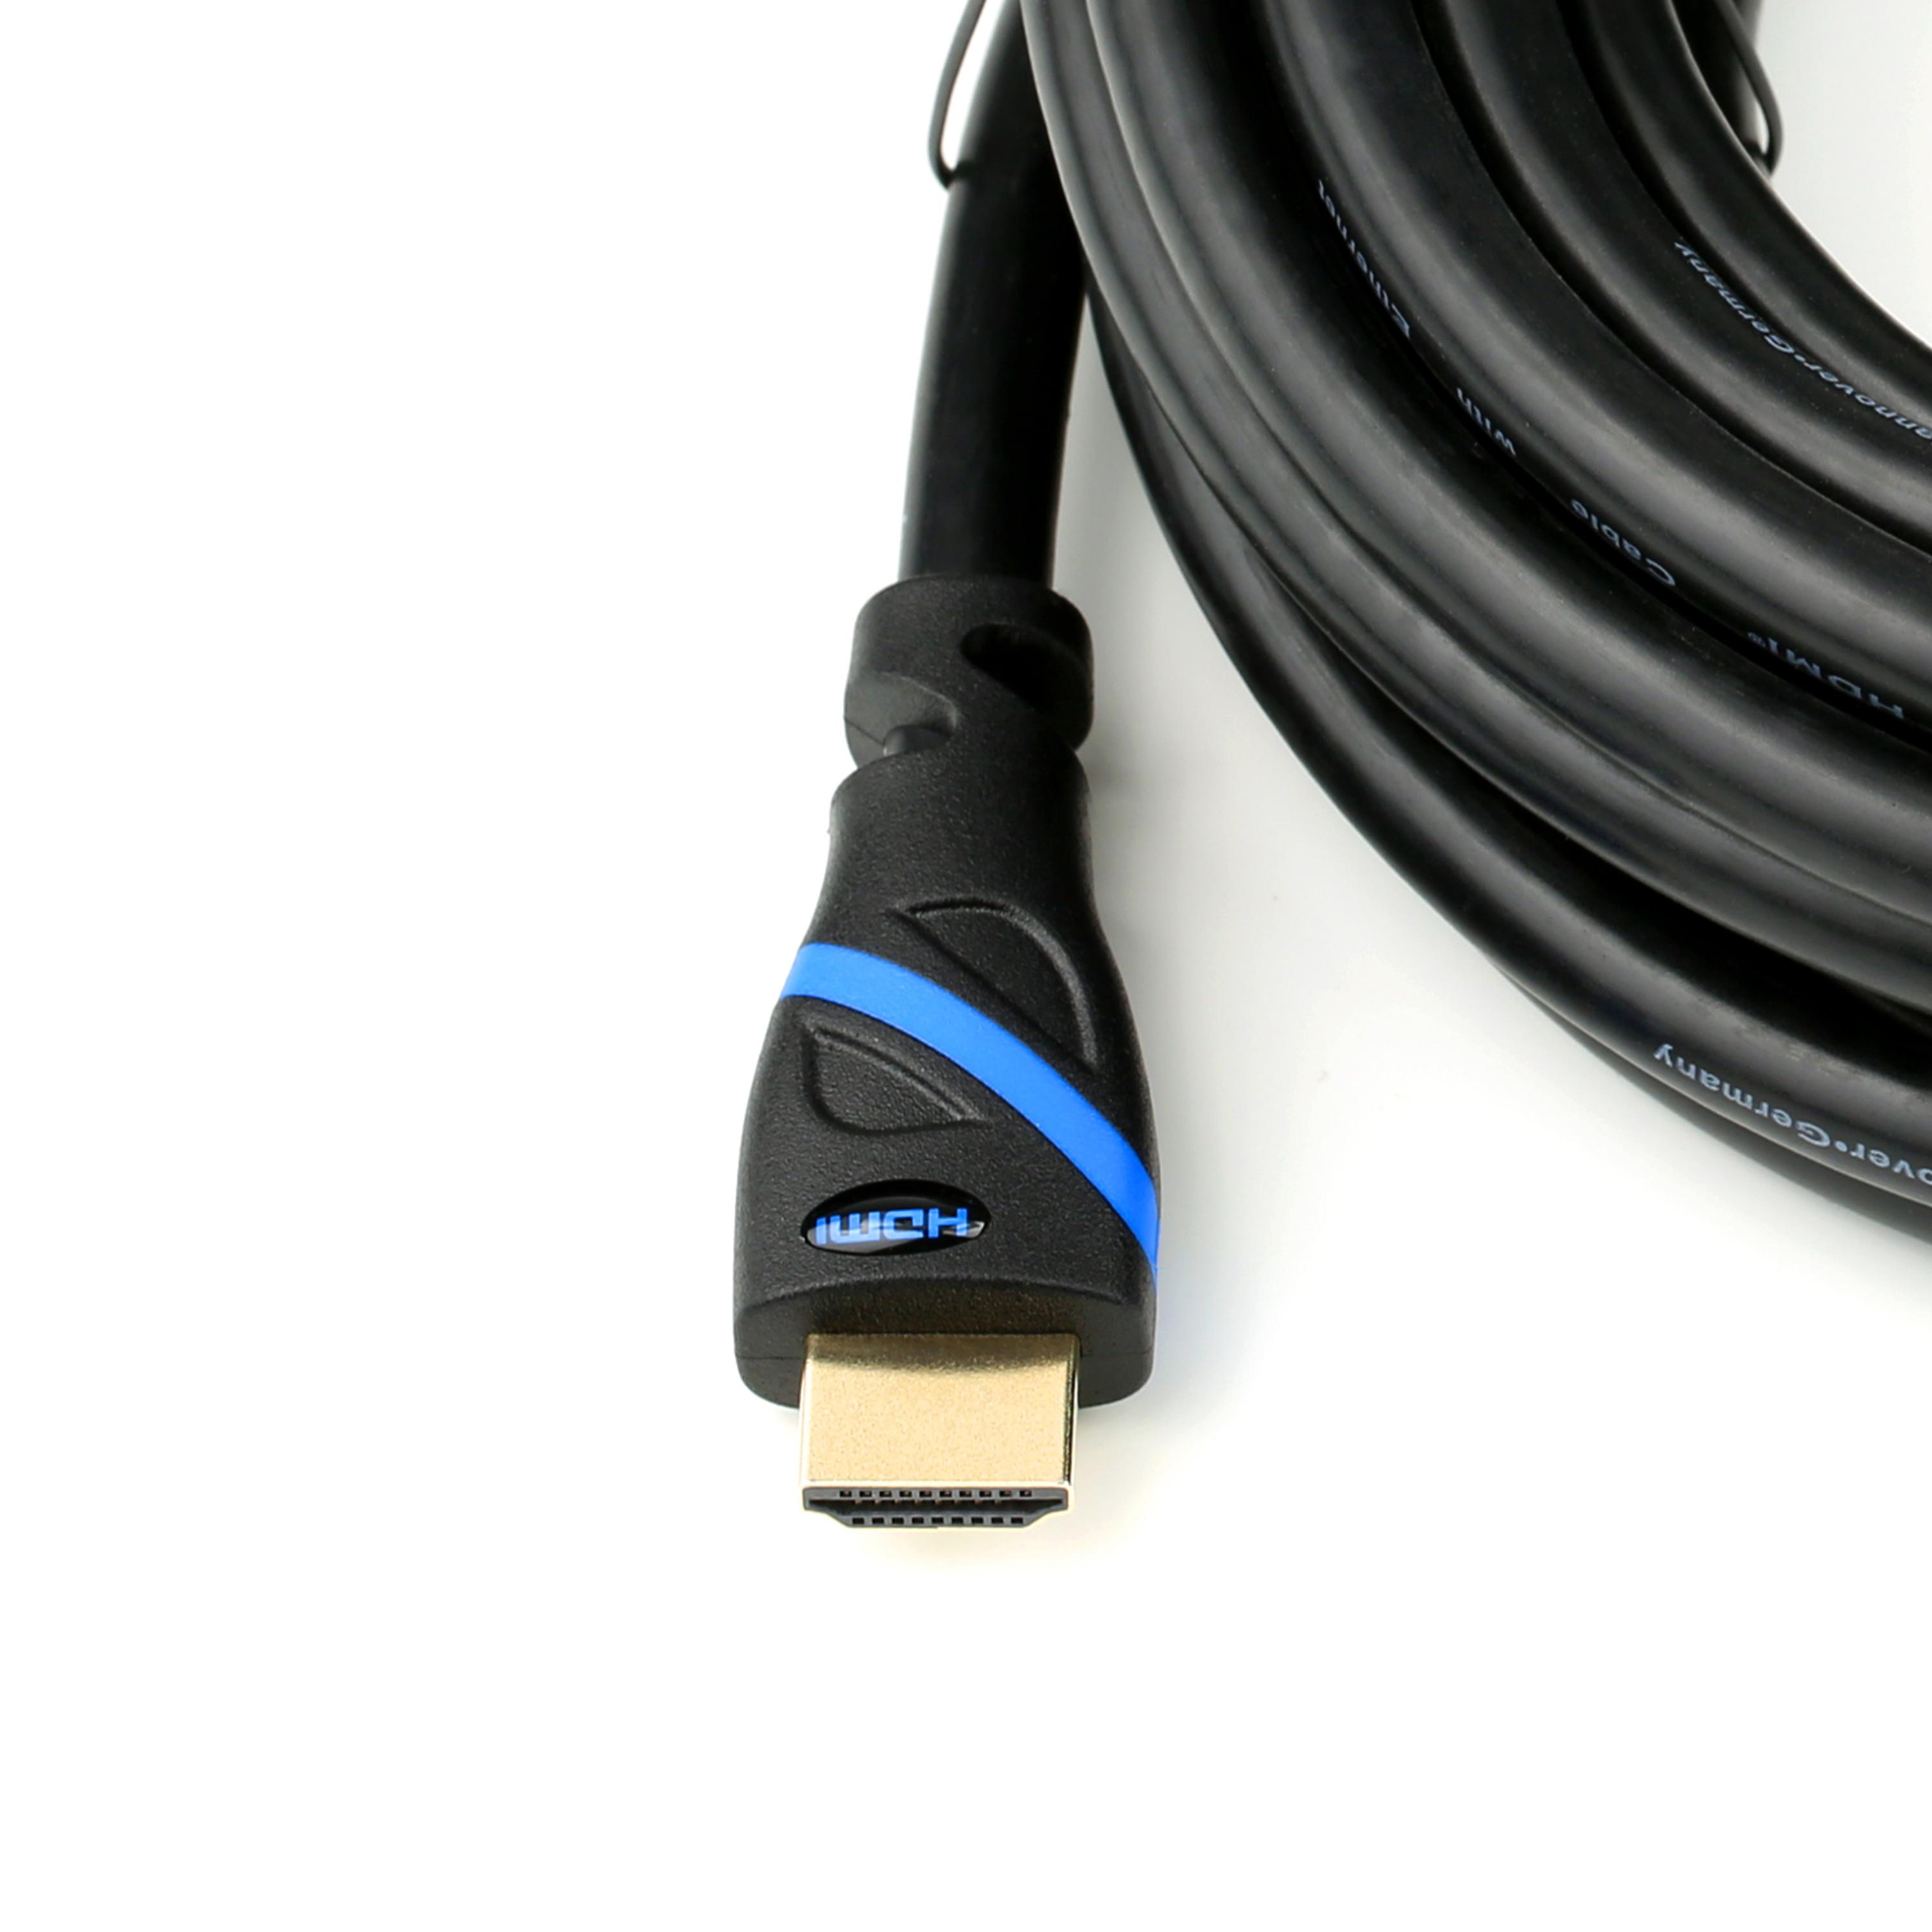 2m 2.0 HDMI schwarz/blau Kabel, Kabel, HDMI CSL